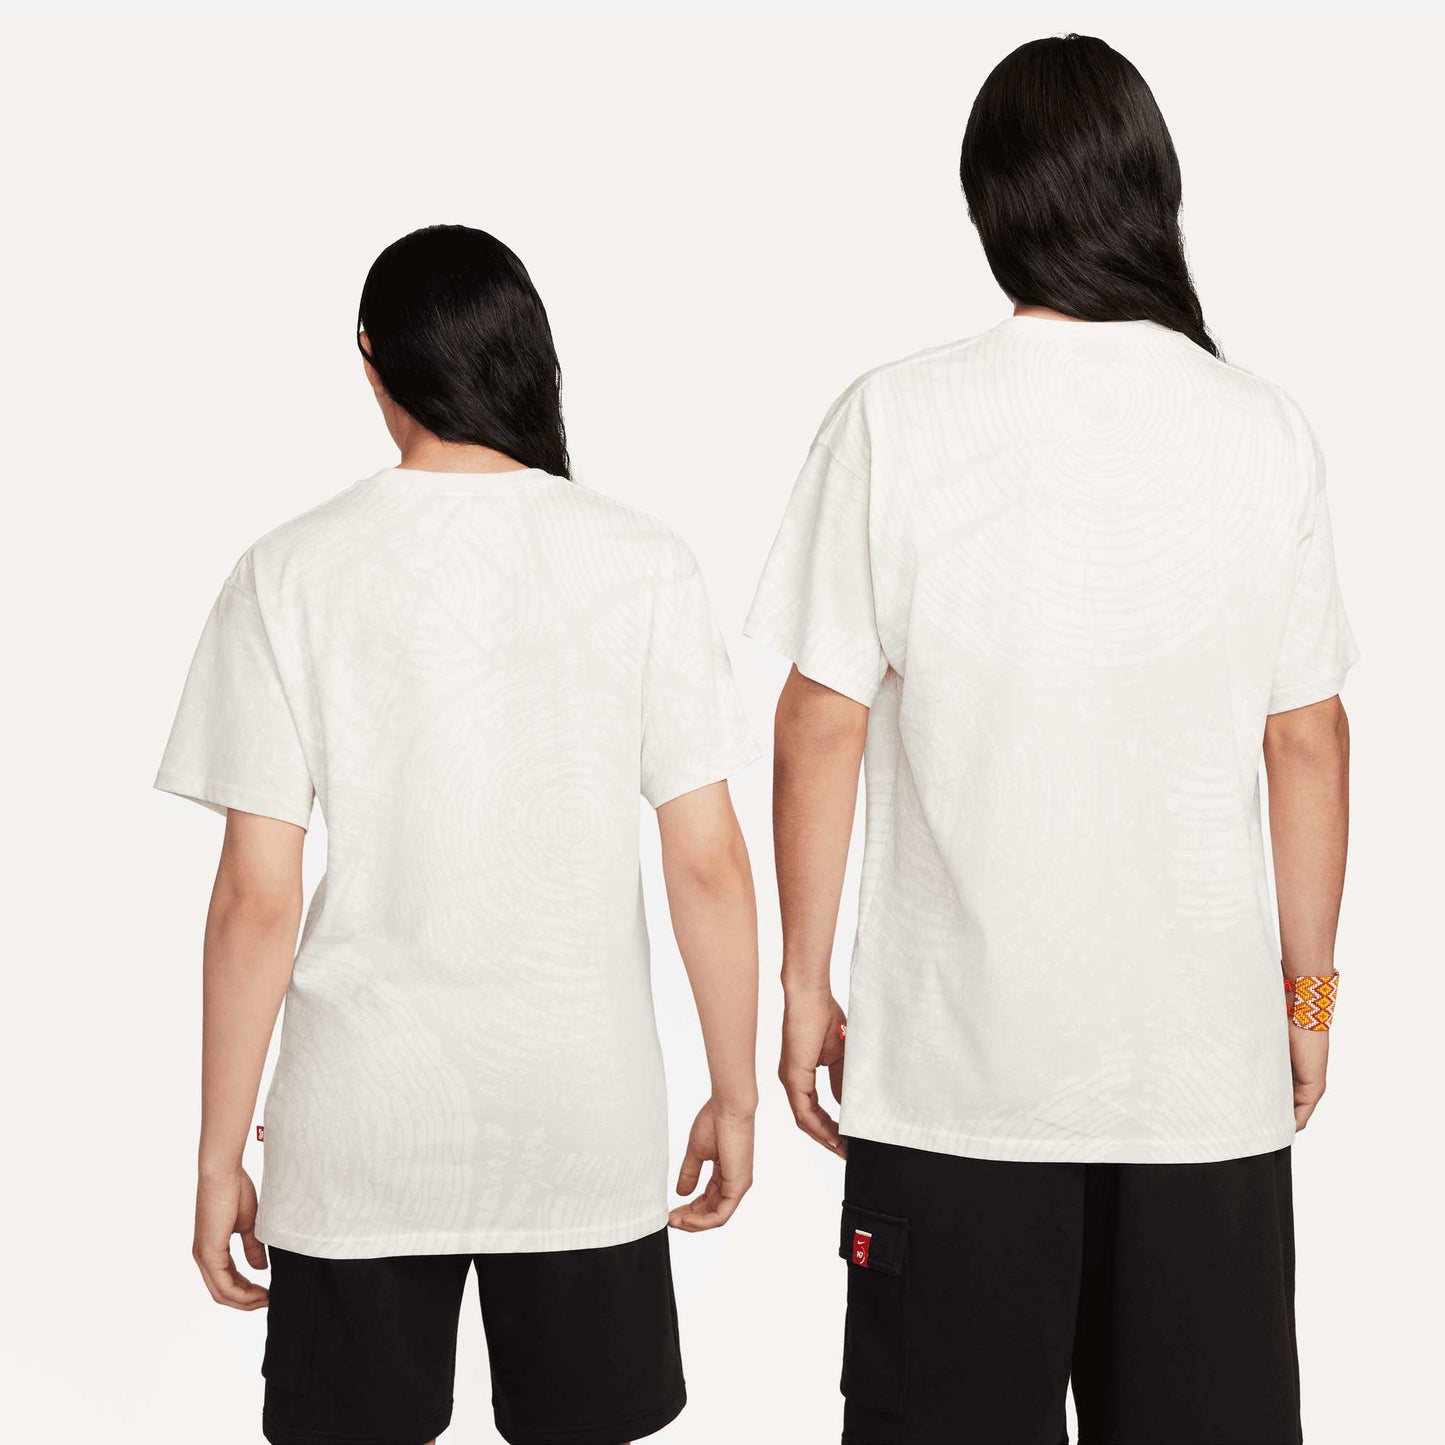 Nike SB N7 Max 90 T-Shirt, sail - Tiki Room Skateboards - 3